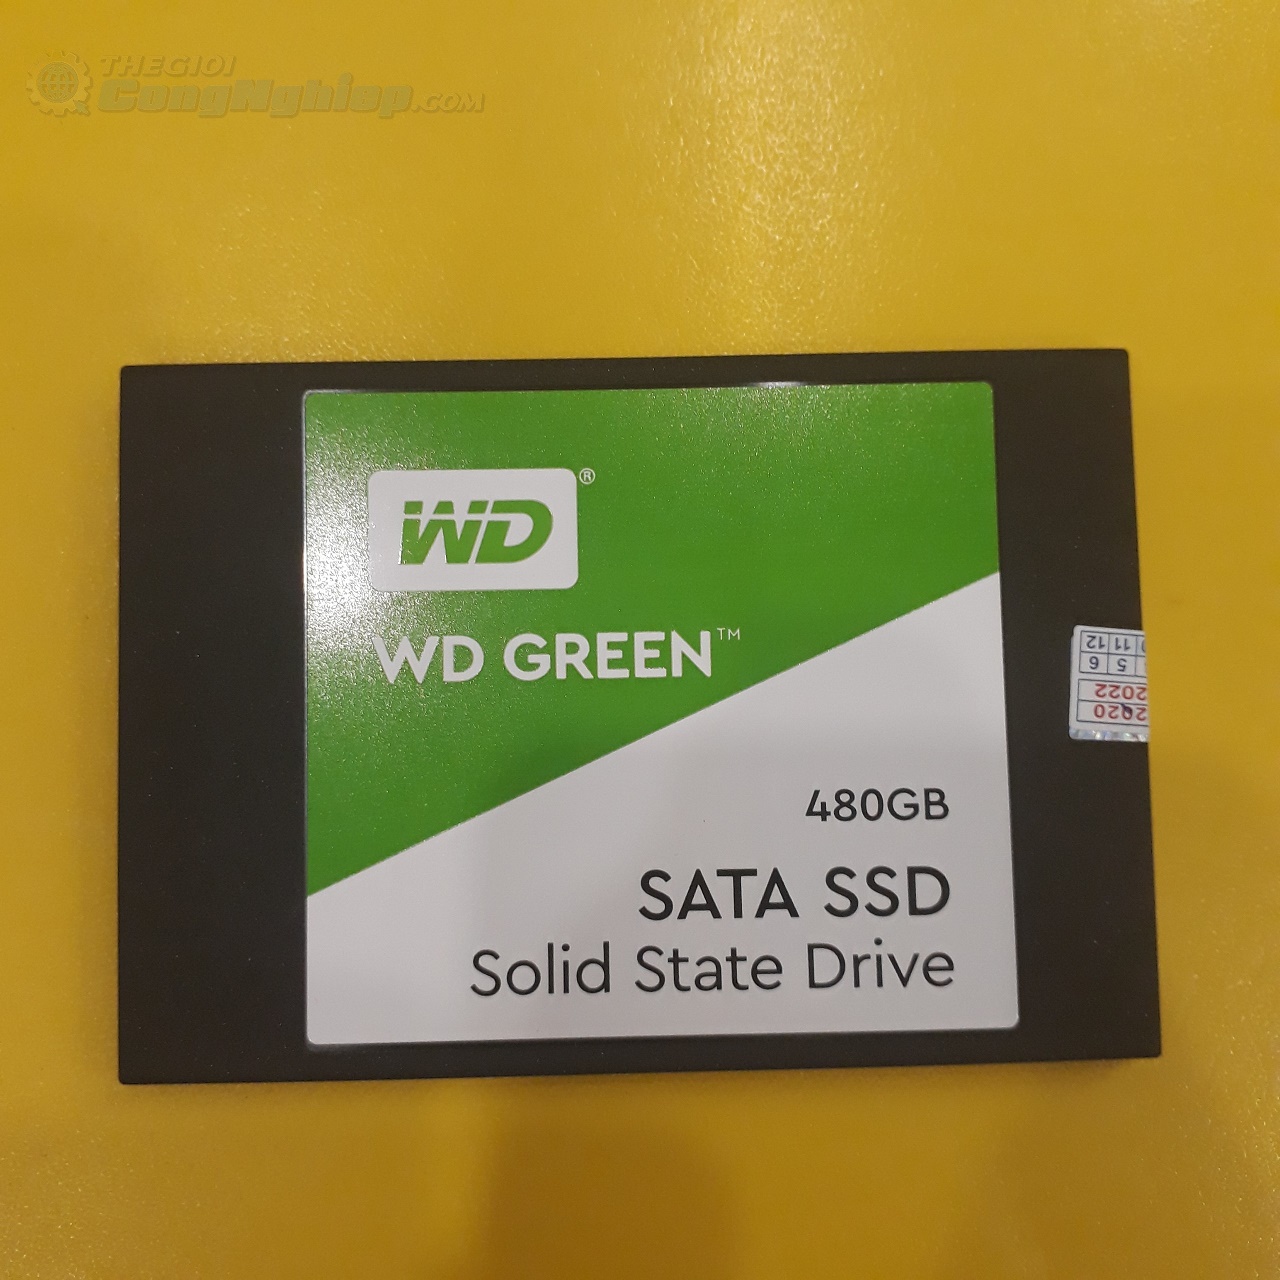 Ổ cứng SSD Western Digital Green 480GB 2.5